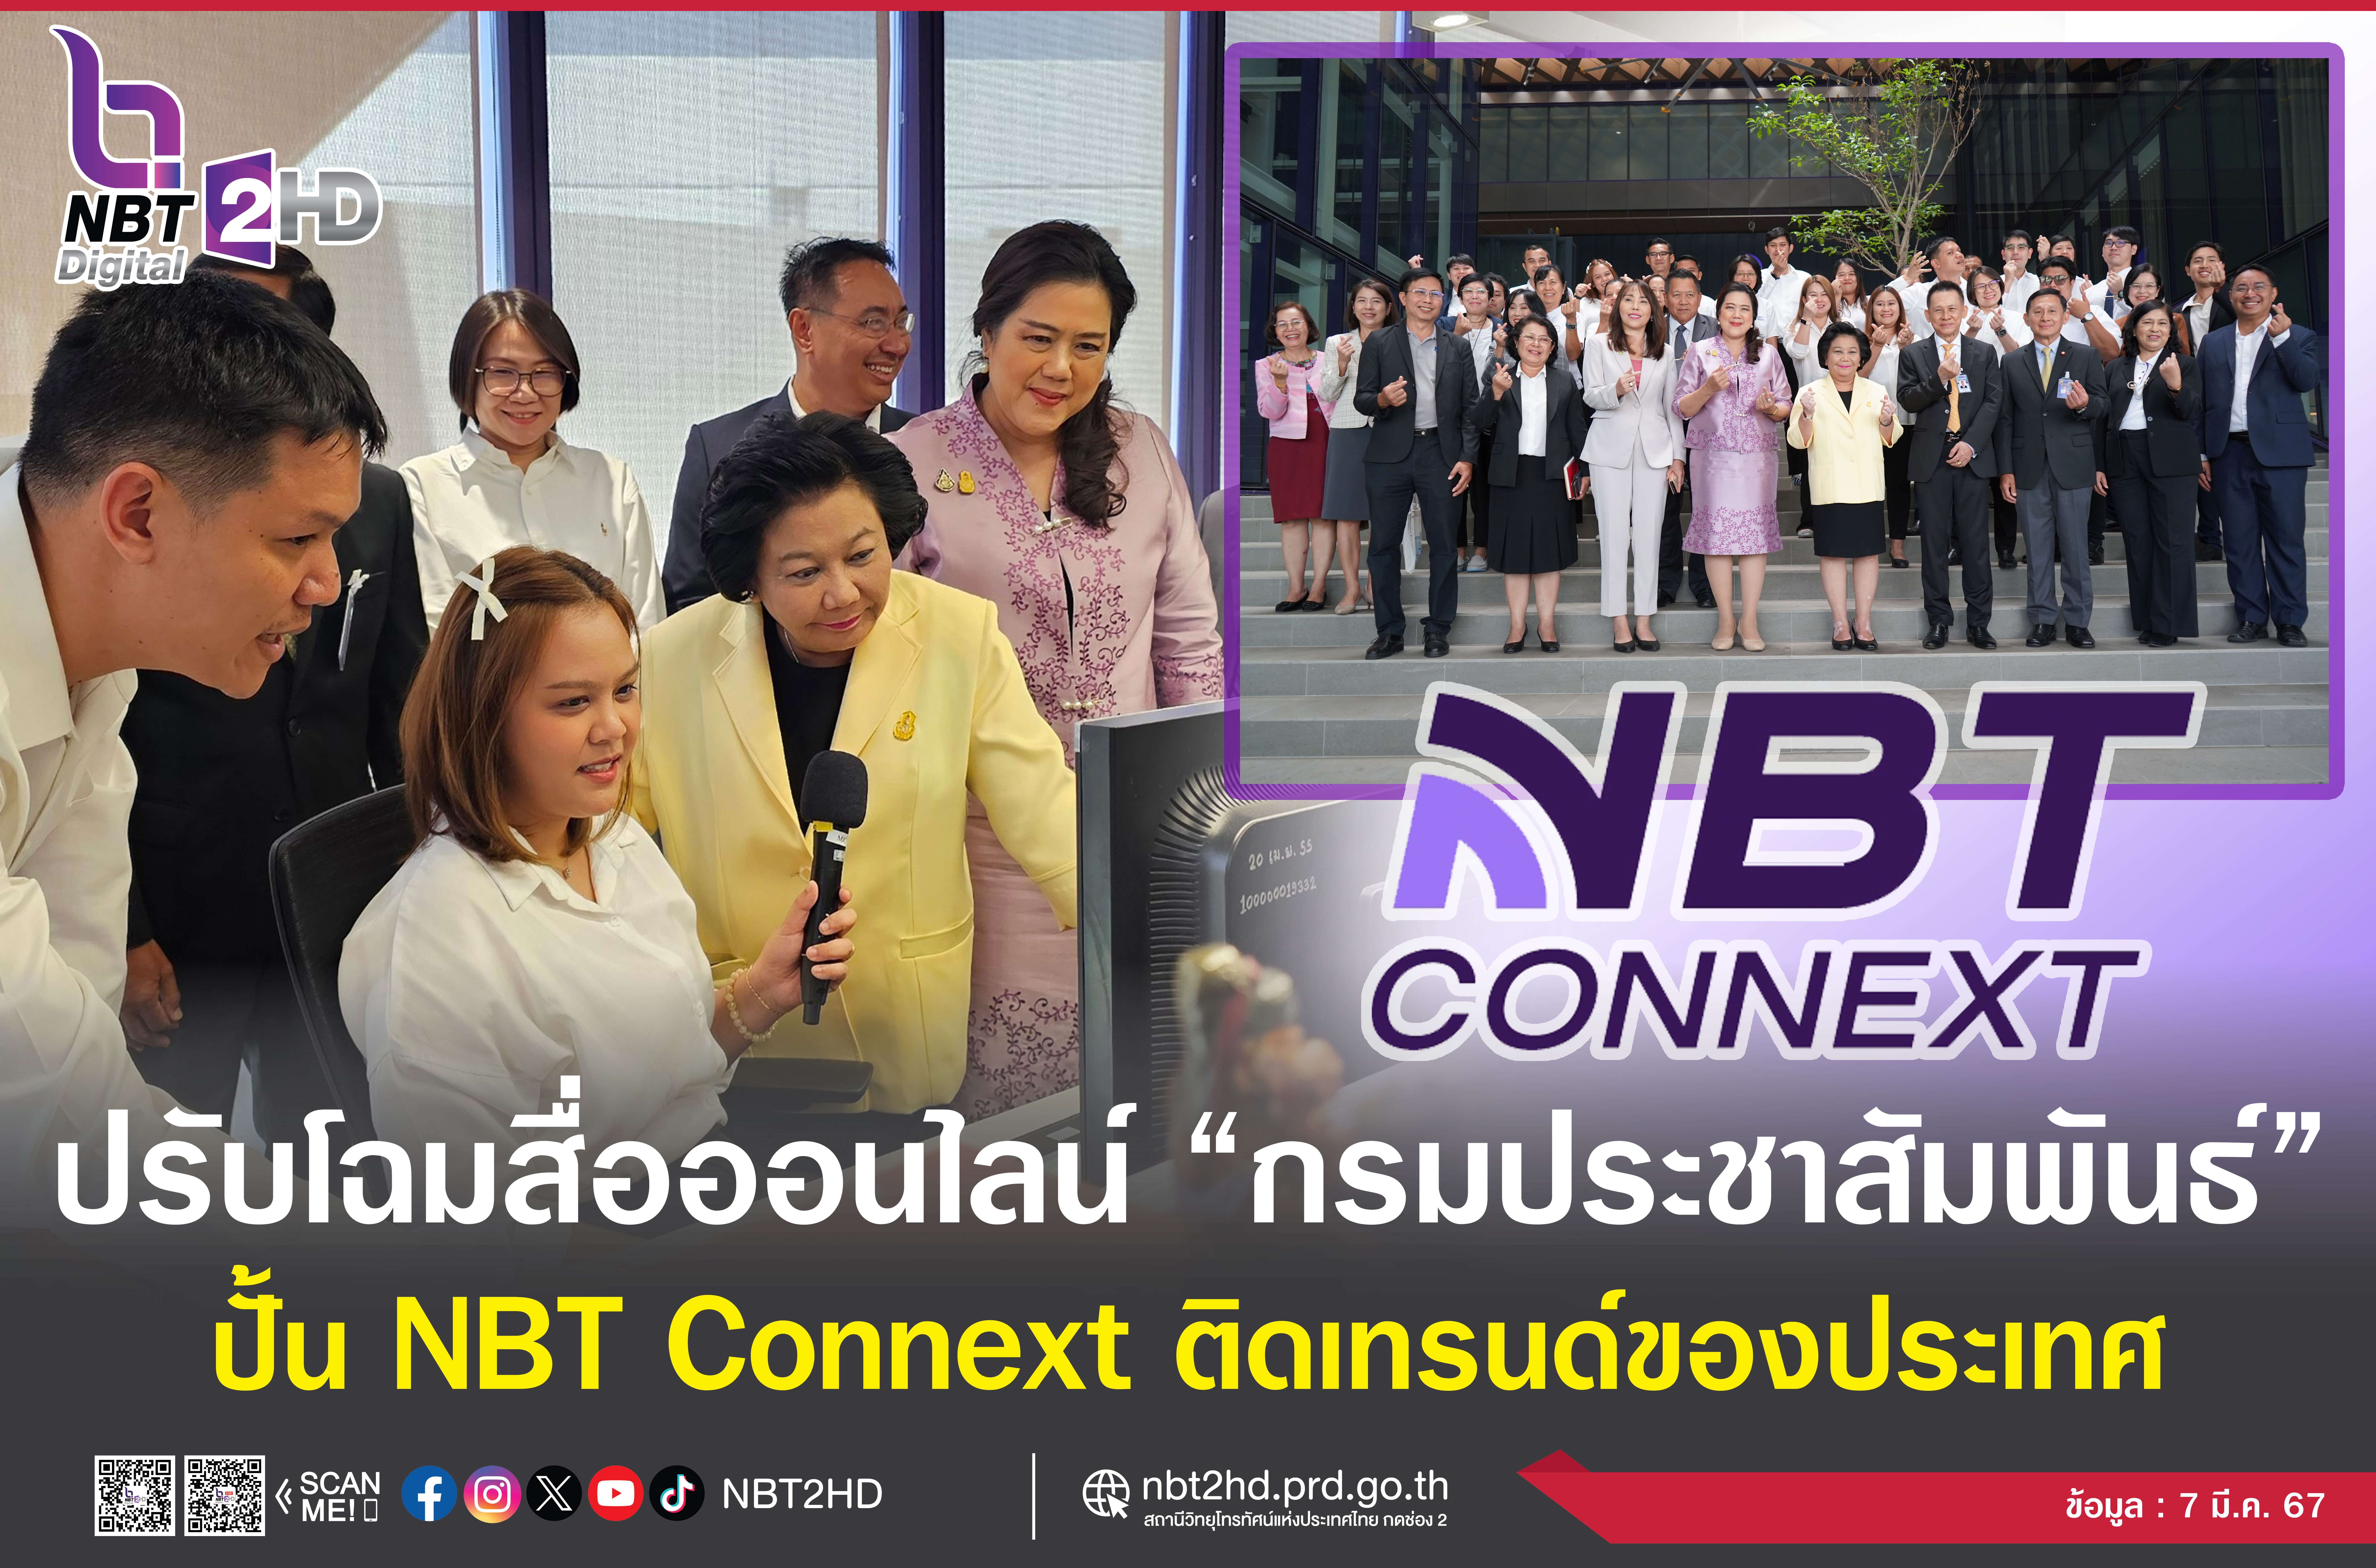 "พวงเพ็ชร" ลุยปรับโฉมสื่อออนไลน์ "กรมประชาสัมพันธ์" ปั้นชื่อ NBT Connext ติดเทรนด์สื่อออนไลน์ของประเทศ